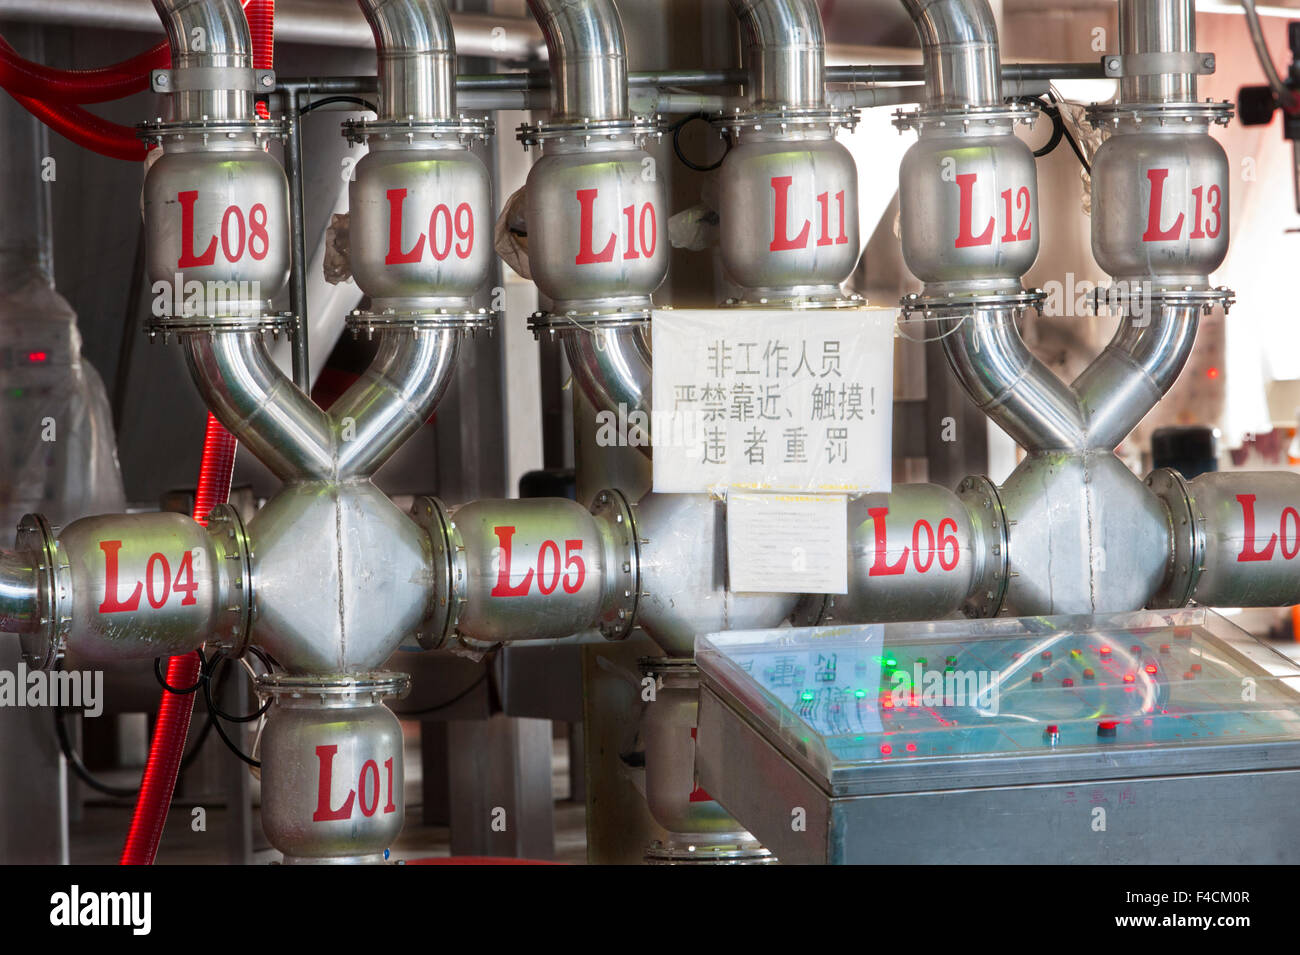 La Chine, le Xinjiang, Manas. Un labyrinthe de tuyaux numérotés conduisent à d'énormes réservoirs de fermentation en acier inoxydable à Citic Winery. Banque D'Images